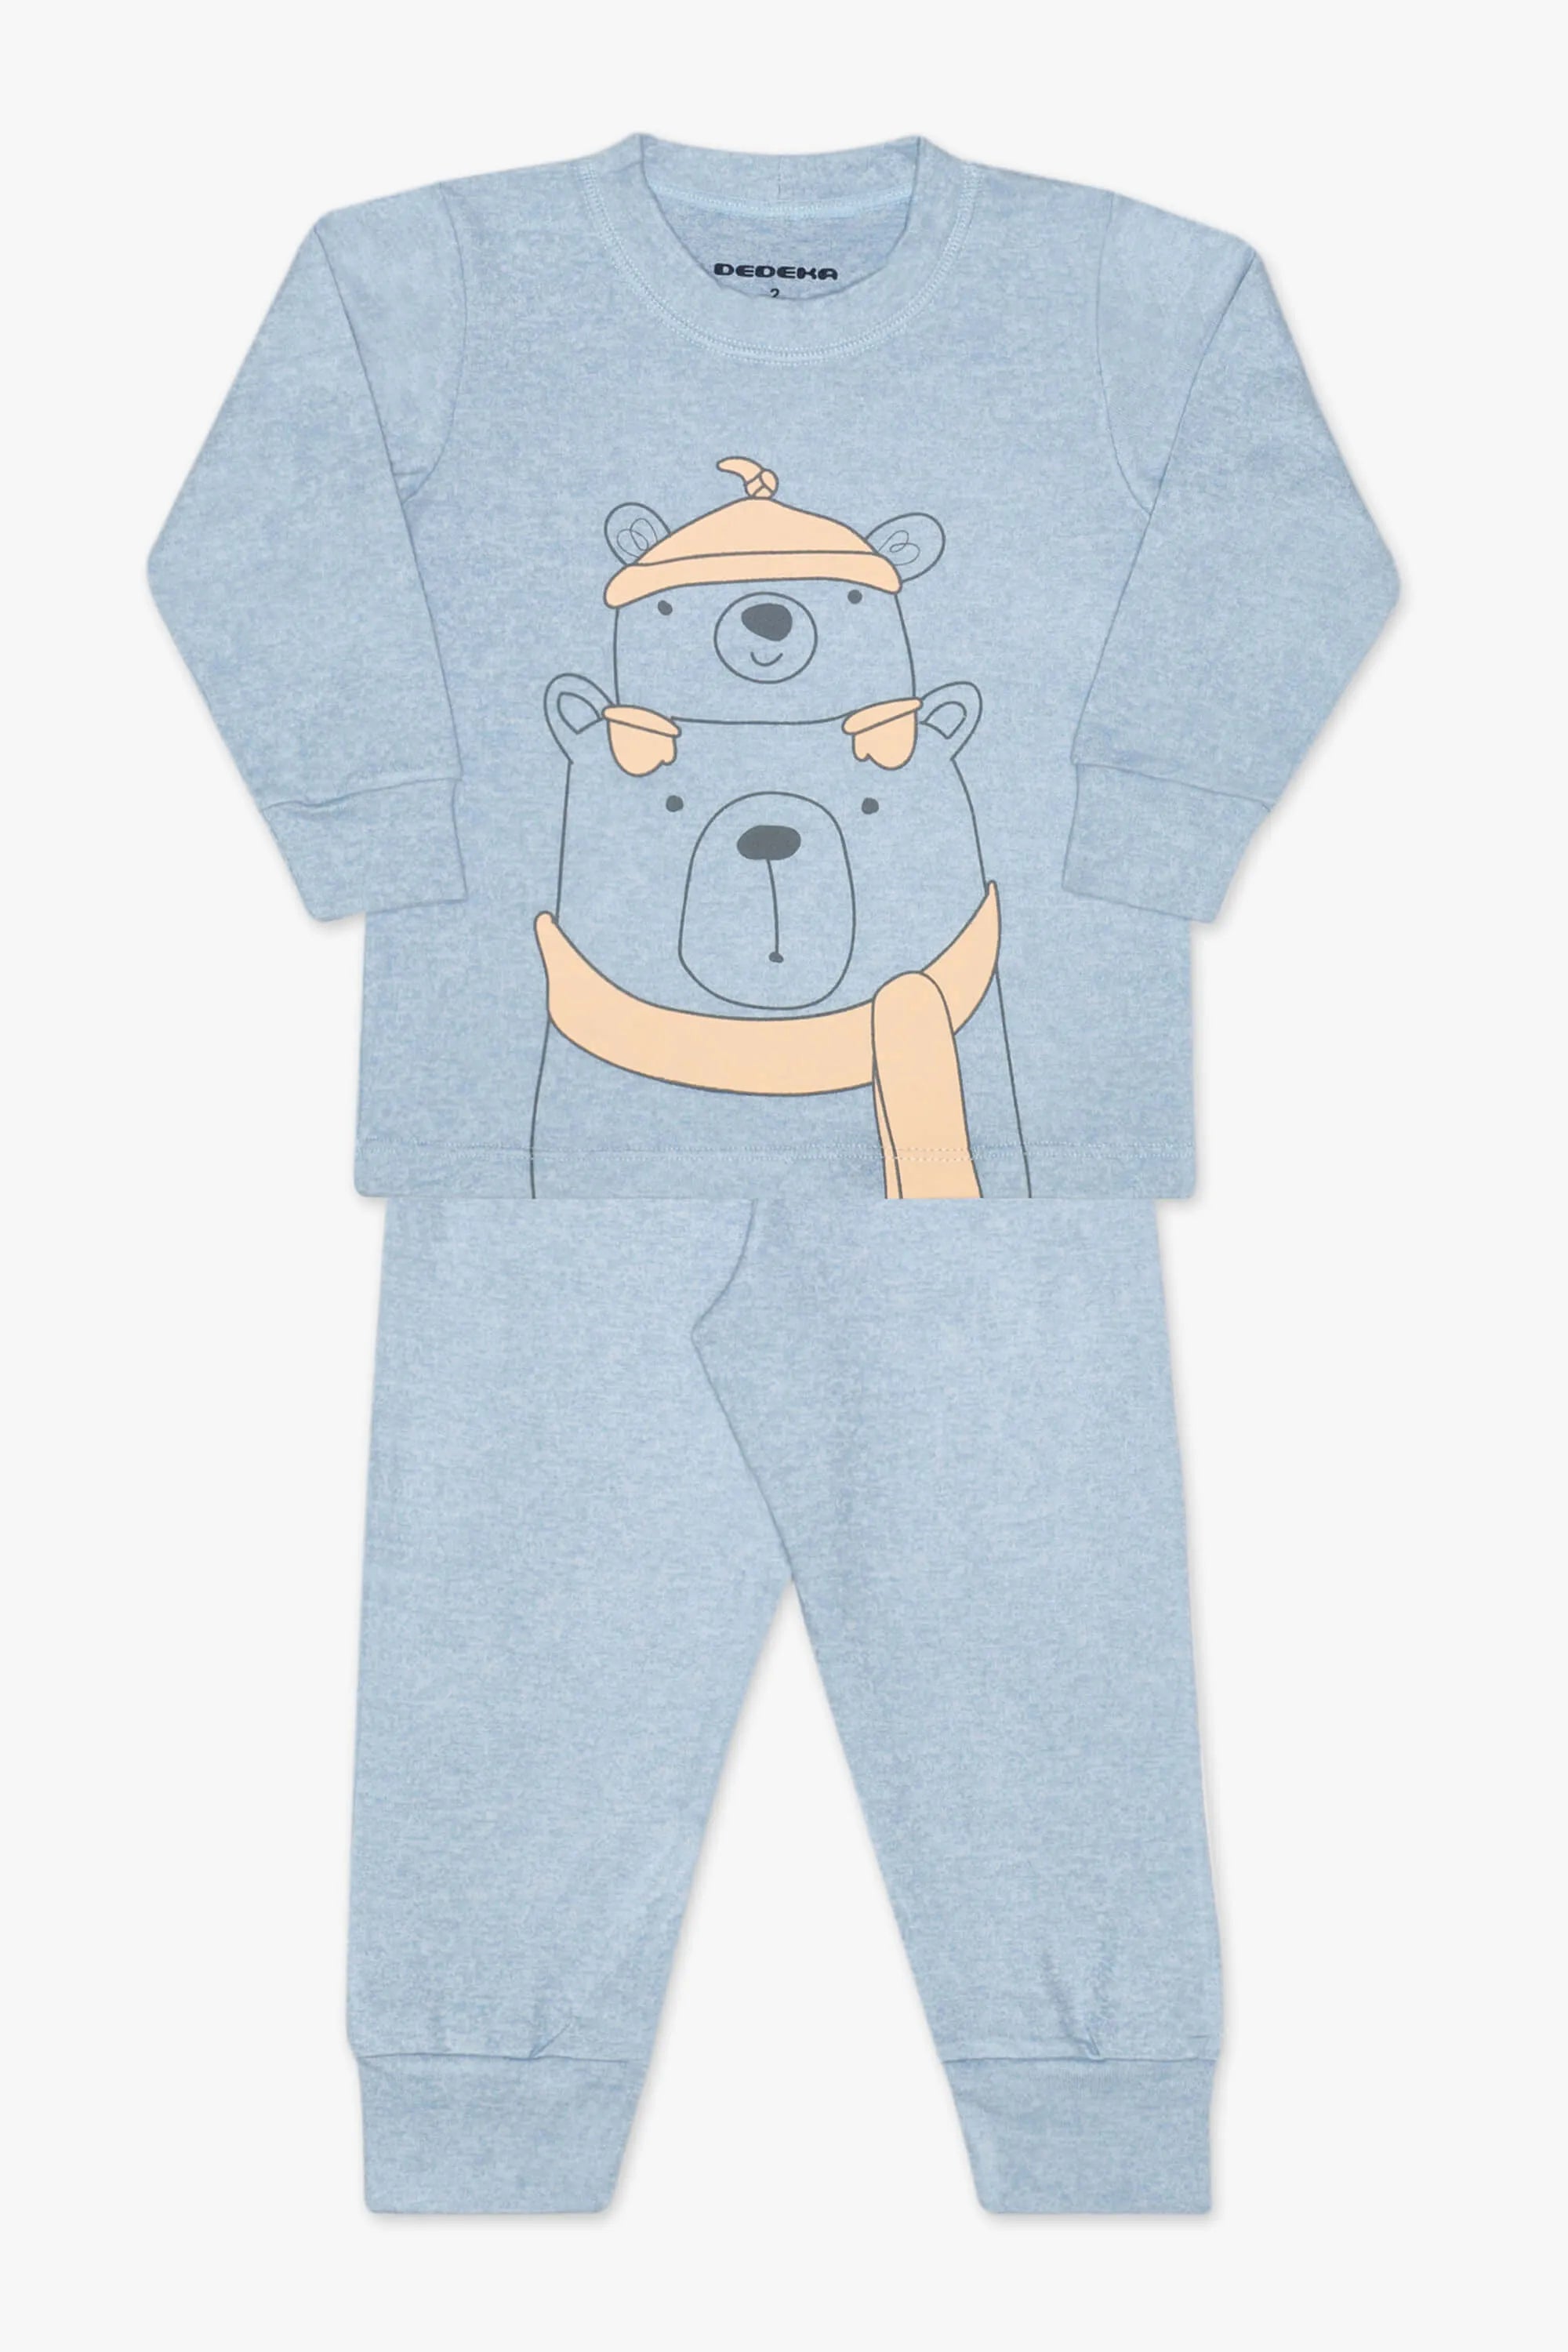 Pijama Urso Azul Dedeka